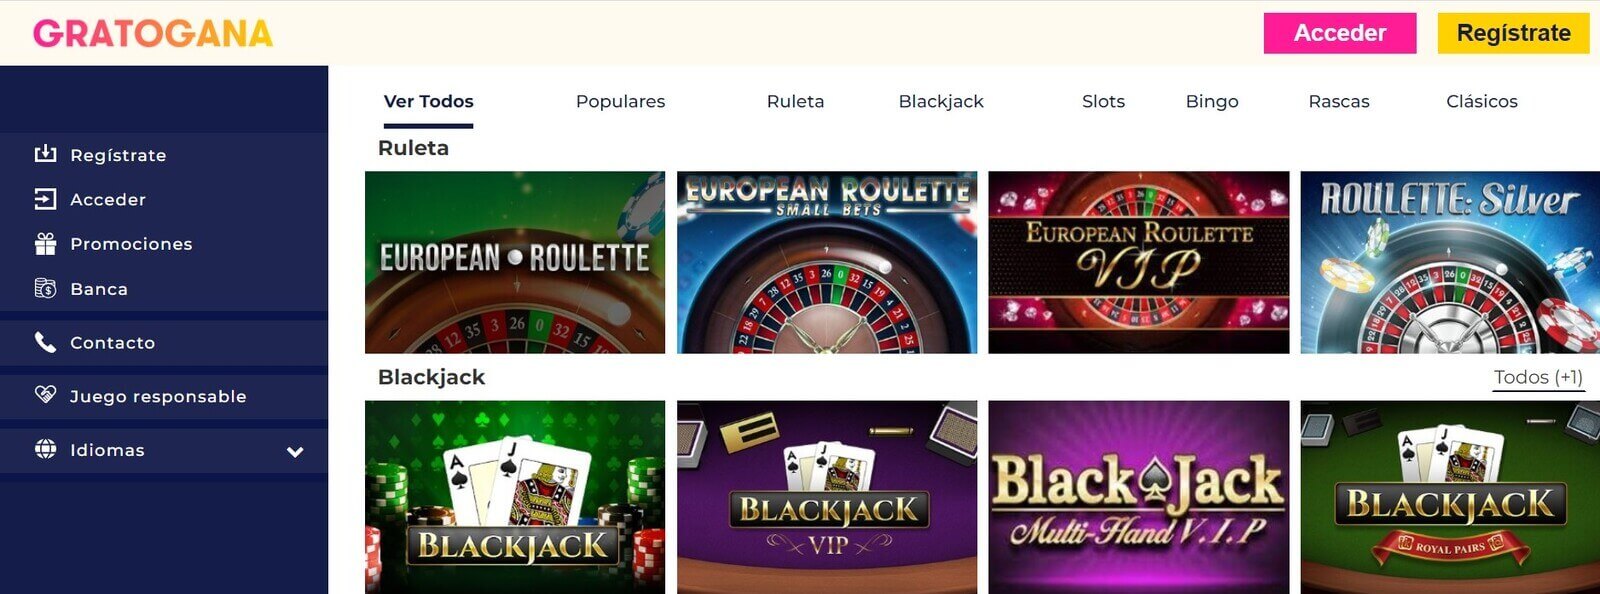 gratogana ruleta blackjack 1600